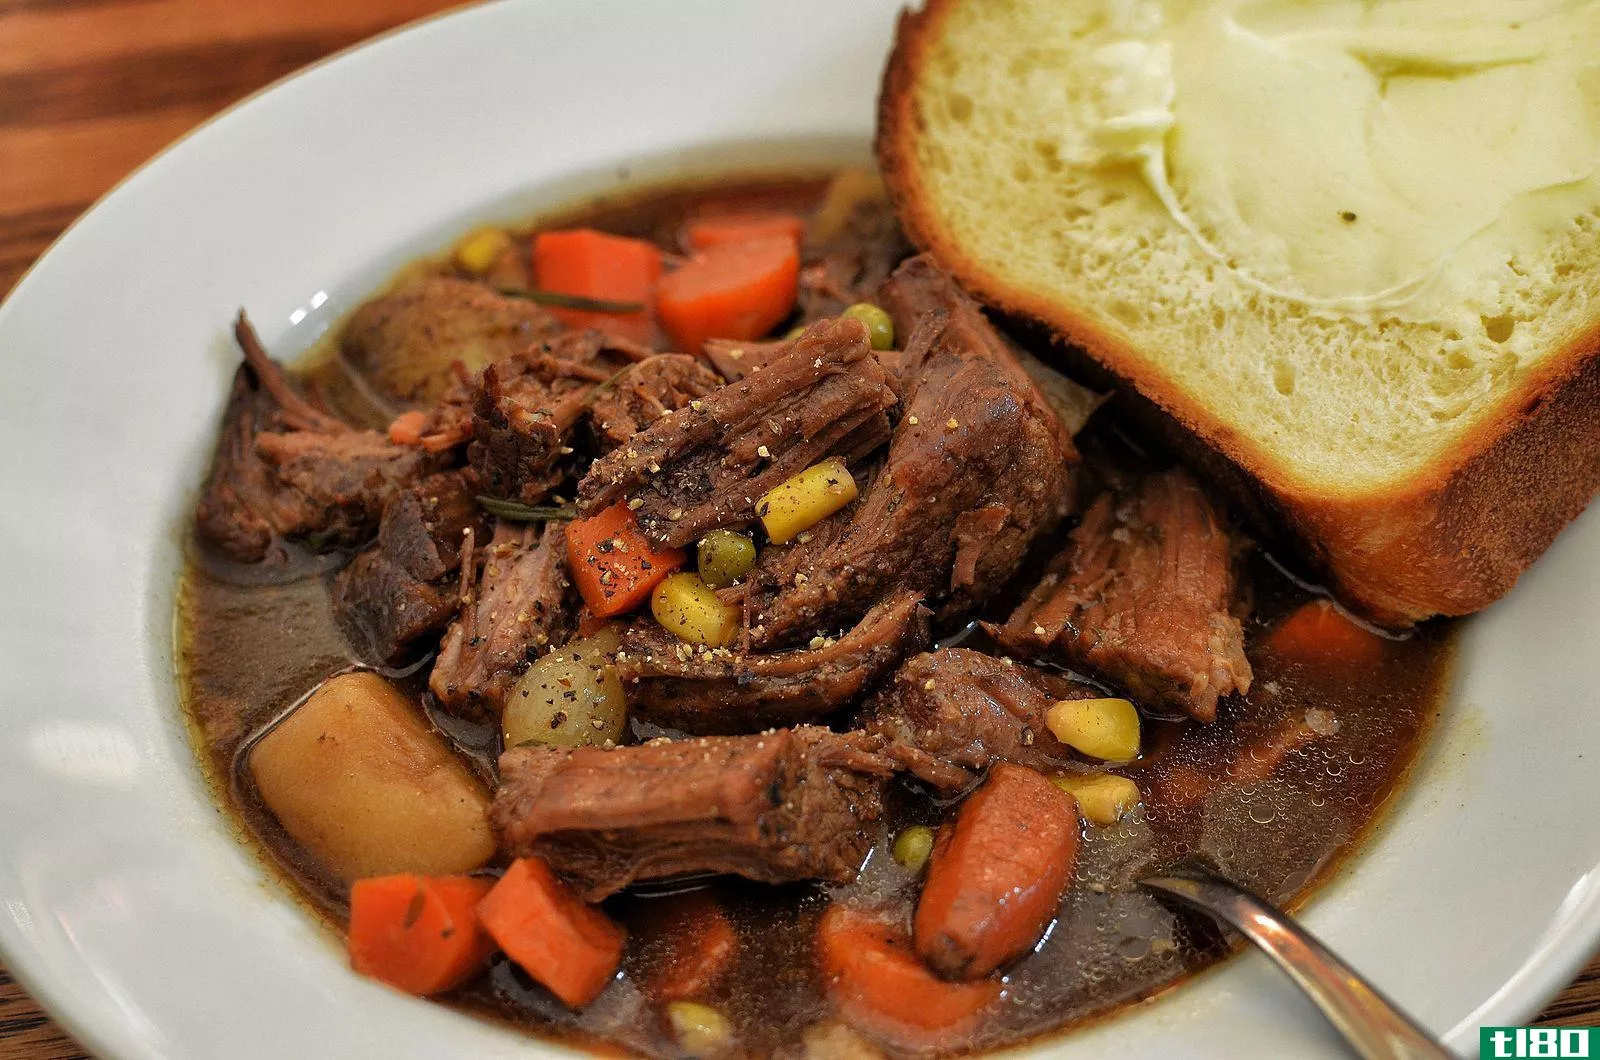 锅烤(pot roast)和焖牛肉(beef stew)的区别